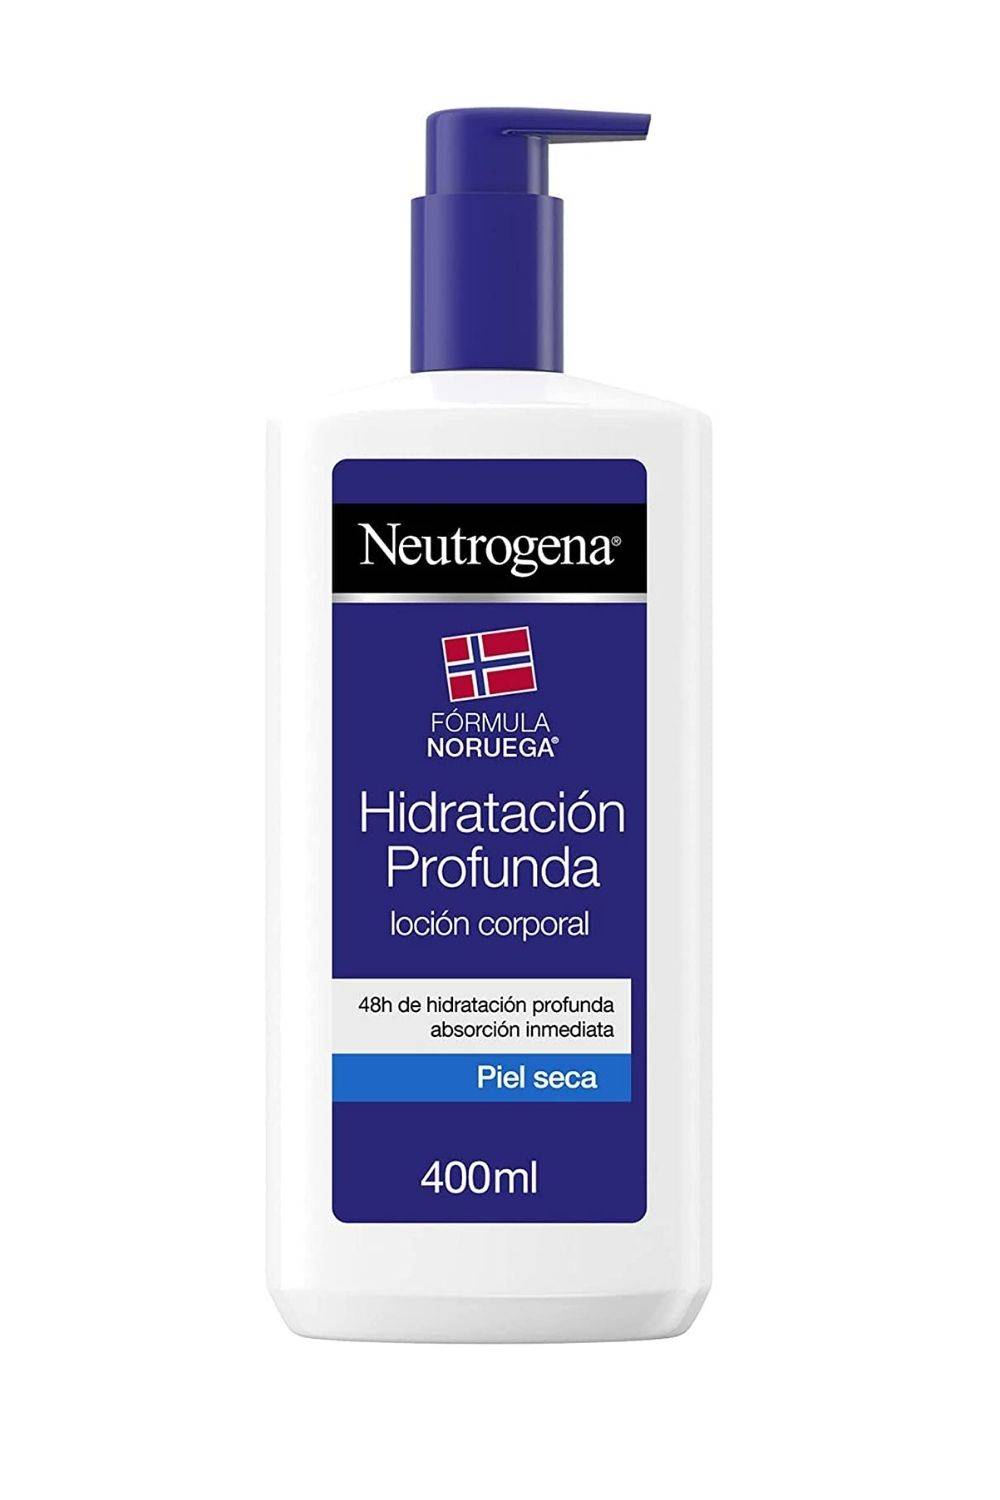 Crema hidratación profunda de Neutrogena